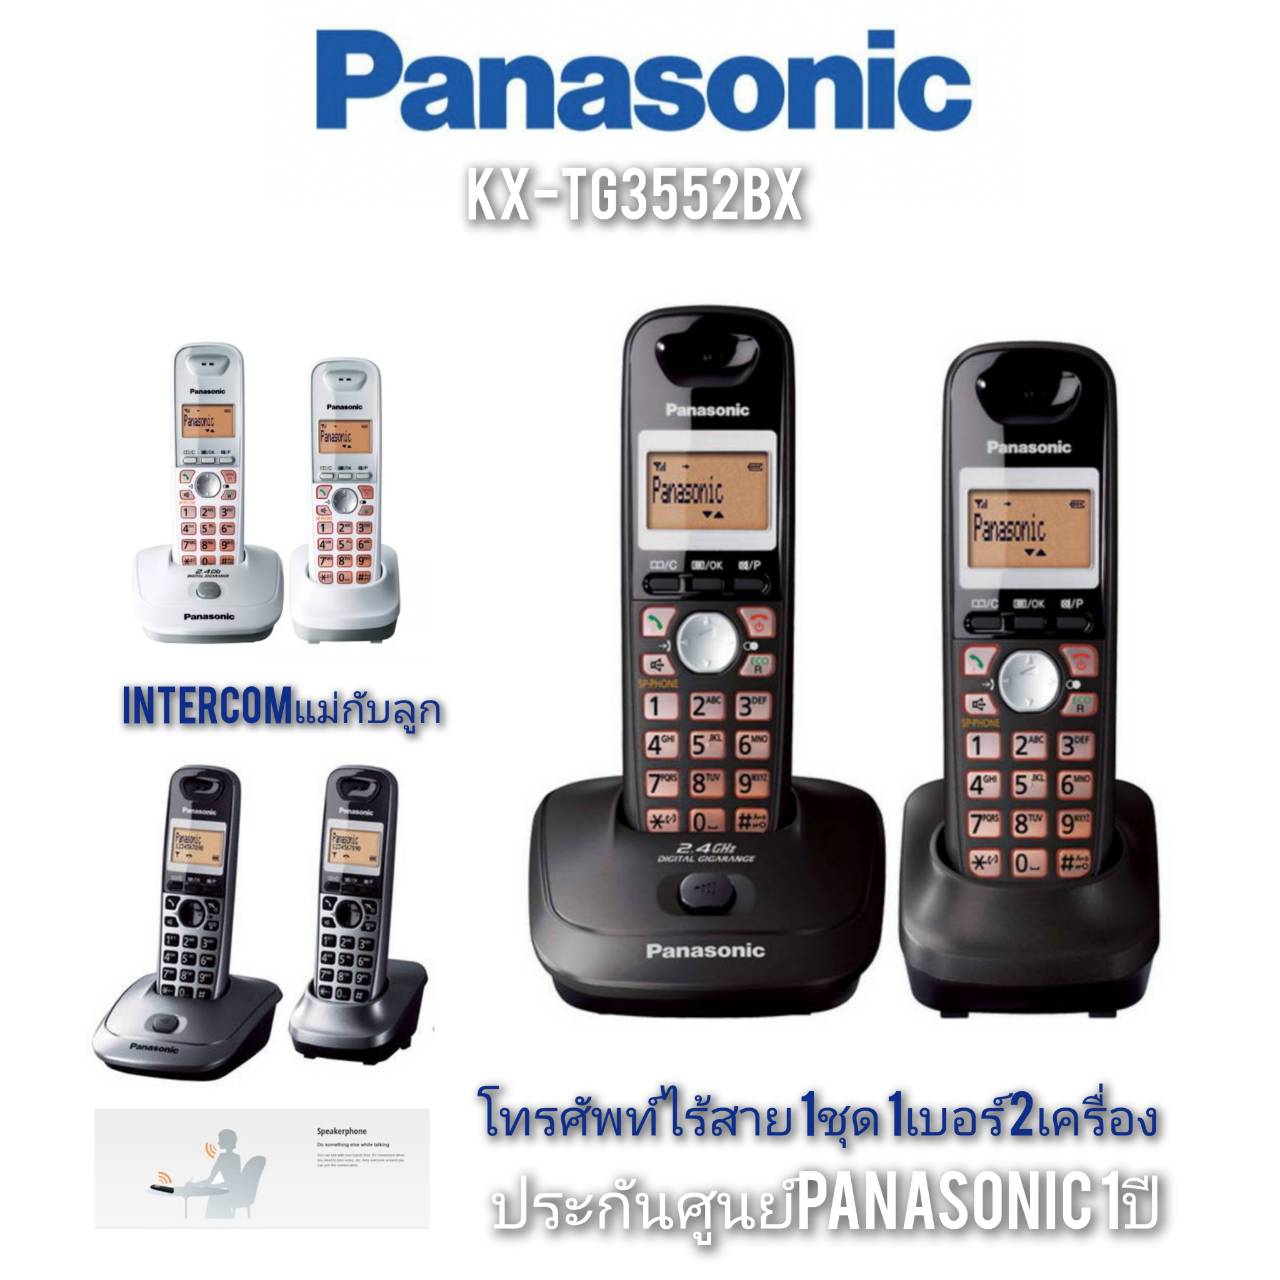 โทรศัพท์ไร้สาย Panasonic รุ่น Kx-Tg3552Bx สีขาว/สีดำ ประกันศูนย์Panasonic  1ปี 1ชุด1เบอร์2เครื่อง Speaker Phone | Lazada.Co.Th